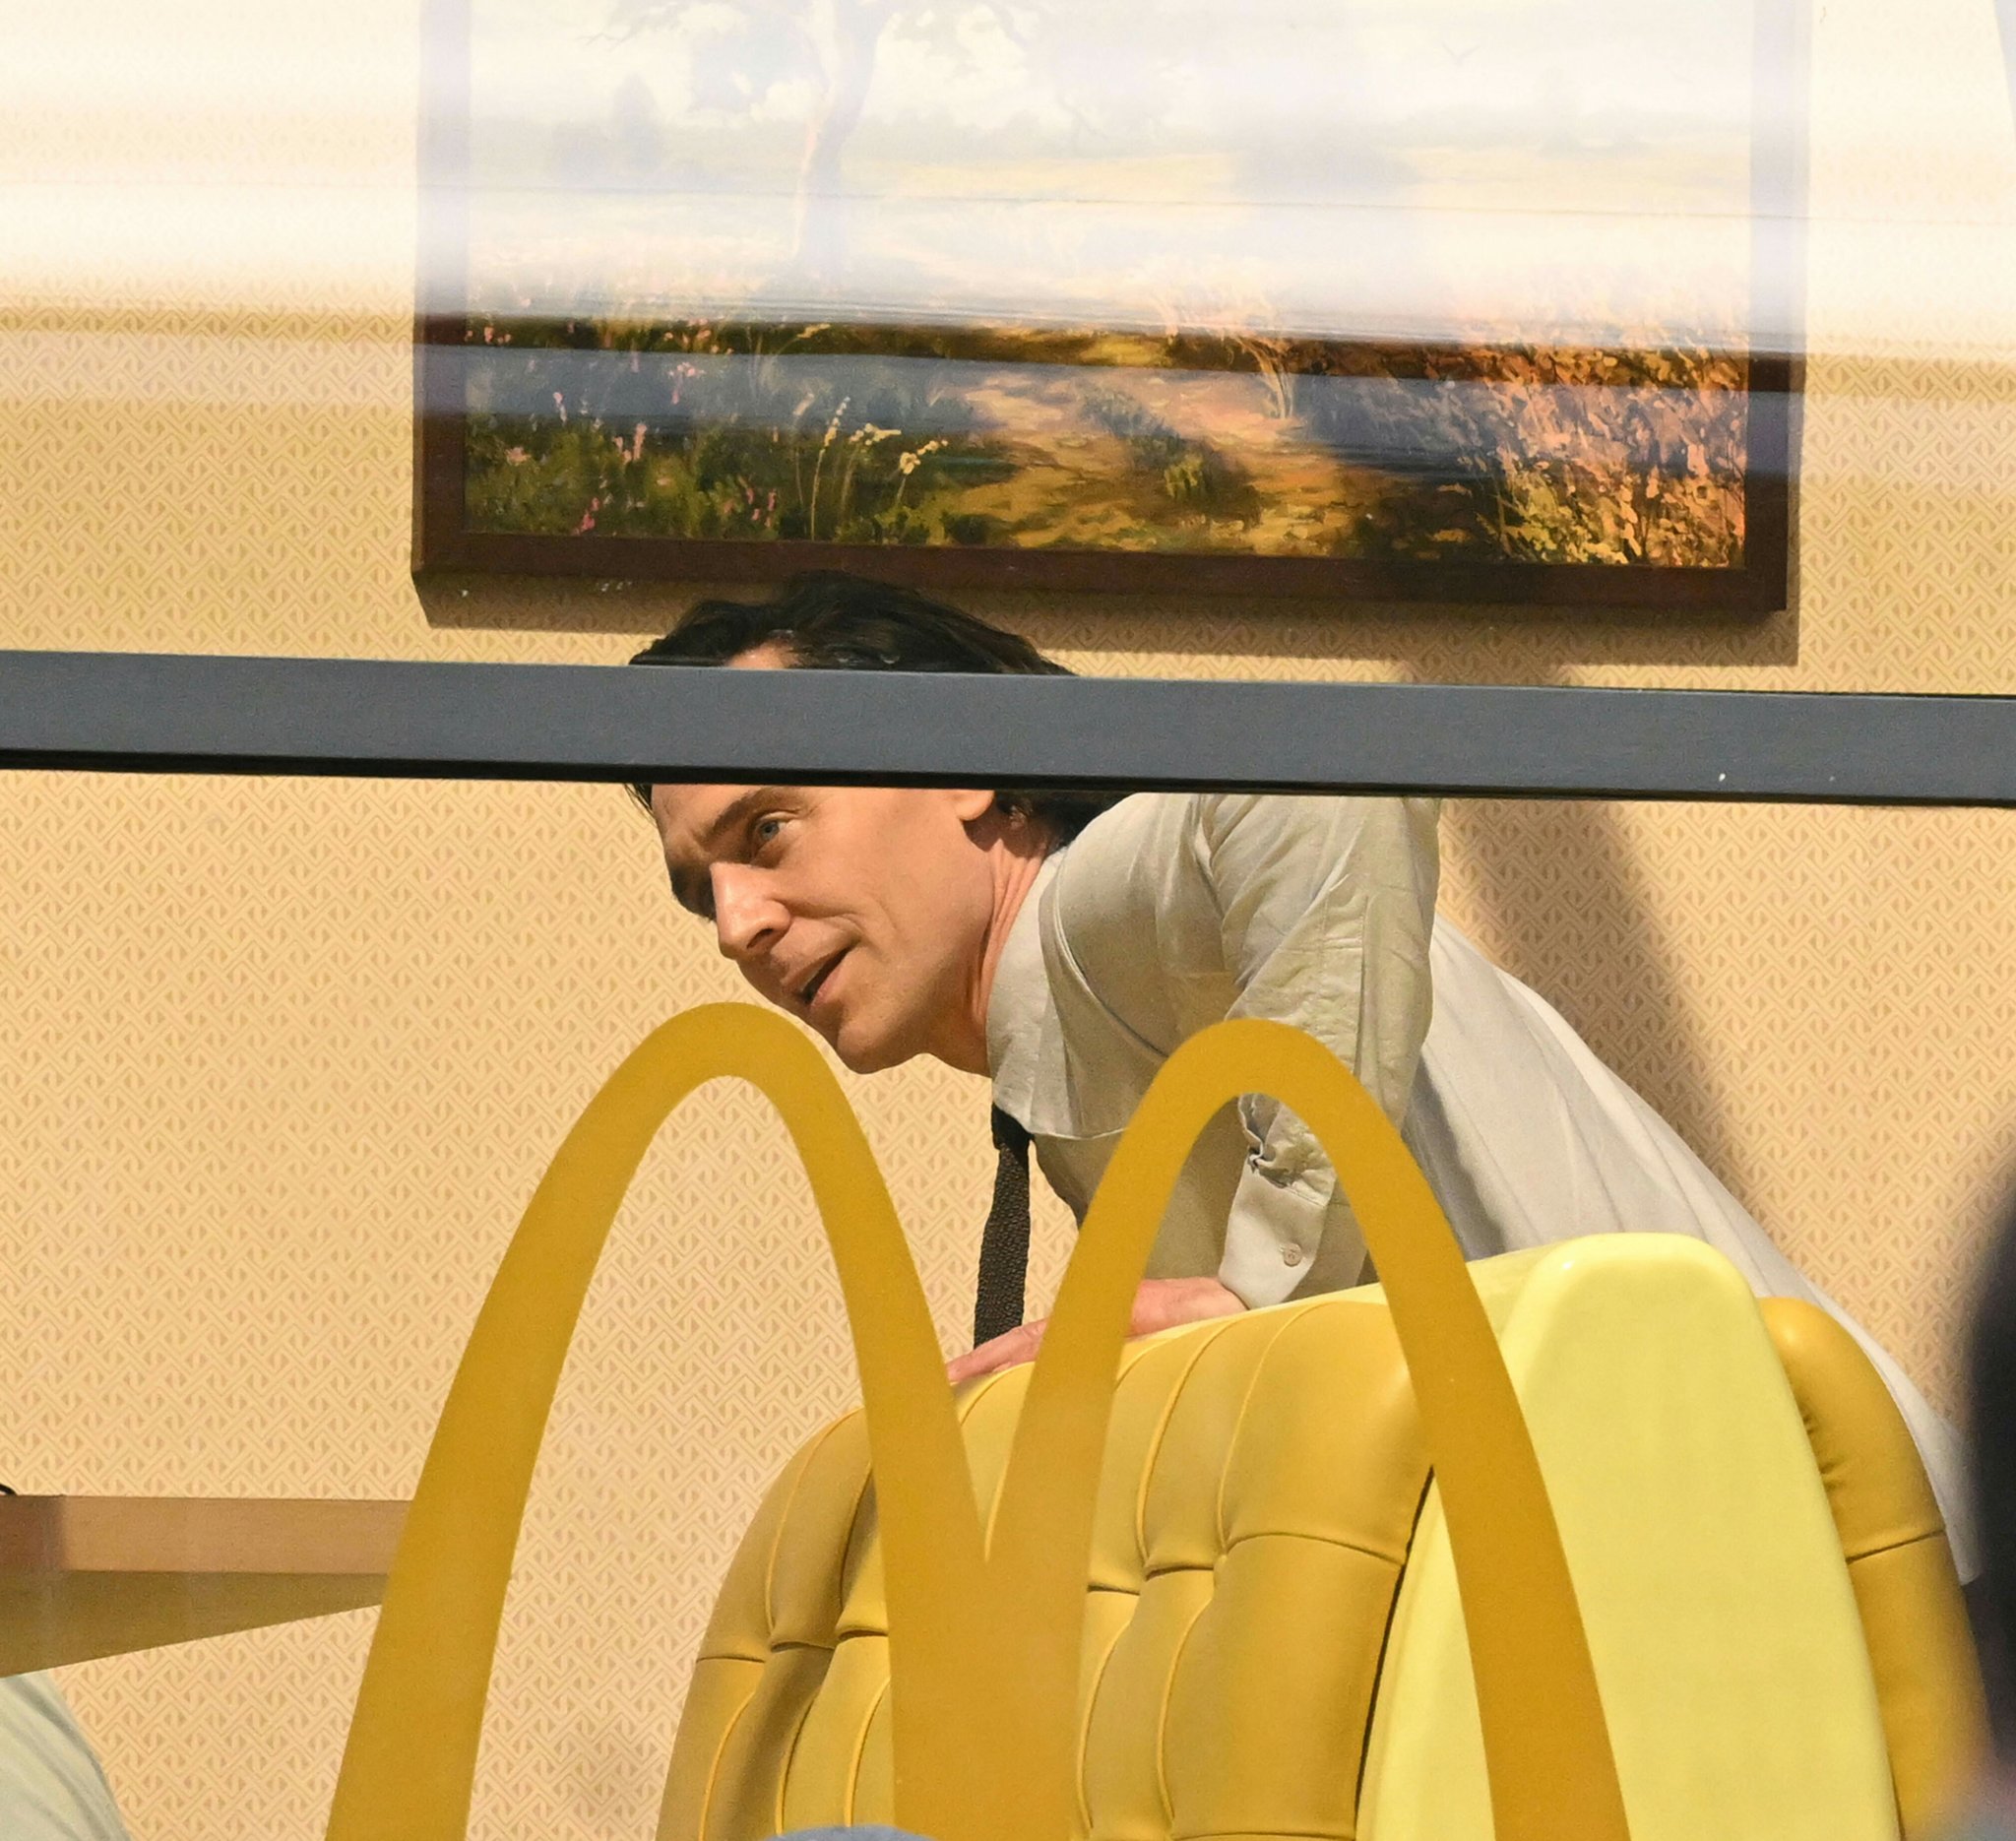 Loki e Sylvie visitam McDonalds em novas fotos do set da segunda